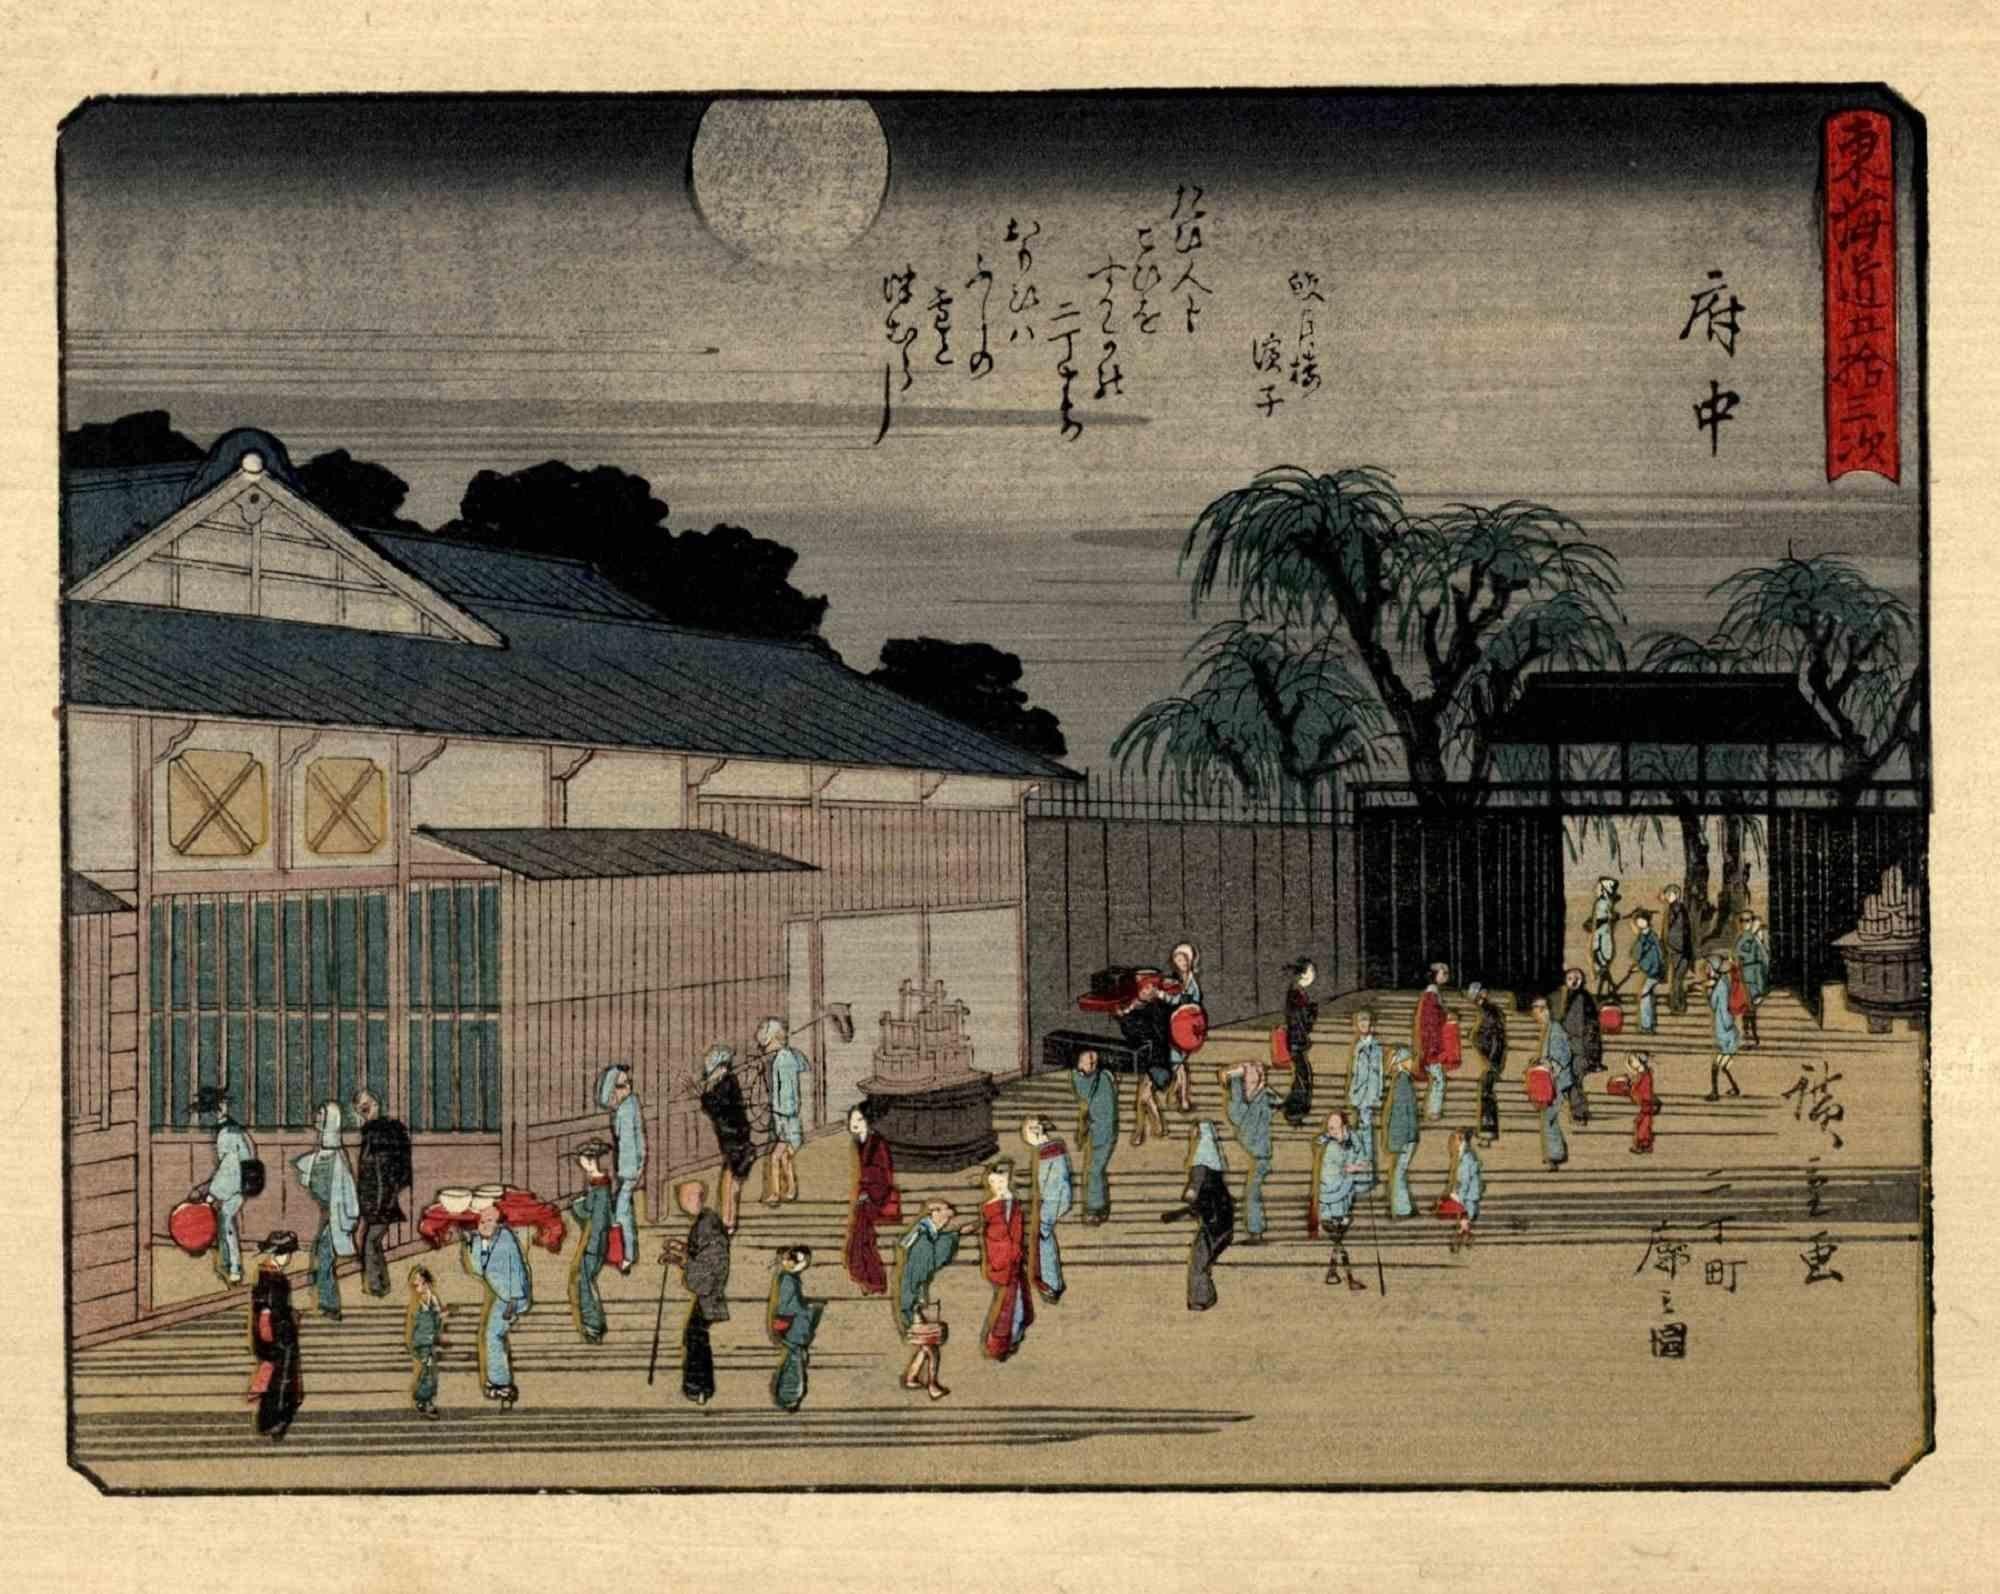 Kyoka-Tokaido est une œuvre d'art moderne originale réalisée d'après Utagawa Hiroshige (1797 - 12 octobre 1858) en 1925.

Gravure sur bois Chuban Yokoe Format.

Réimpression de l'édition de 1925. Après-coup réduit de la série "Tokaido gojusan tsugi"